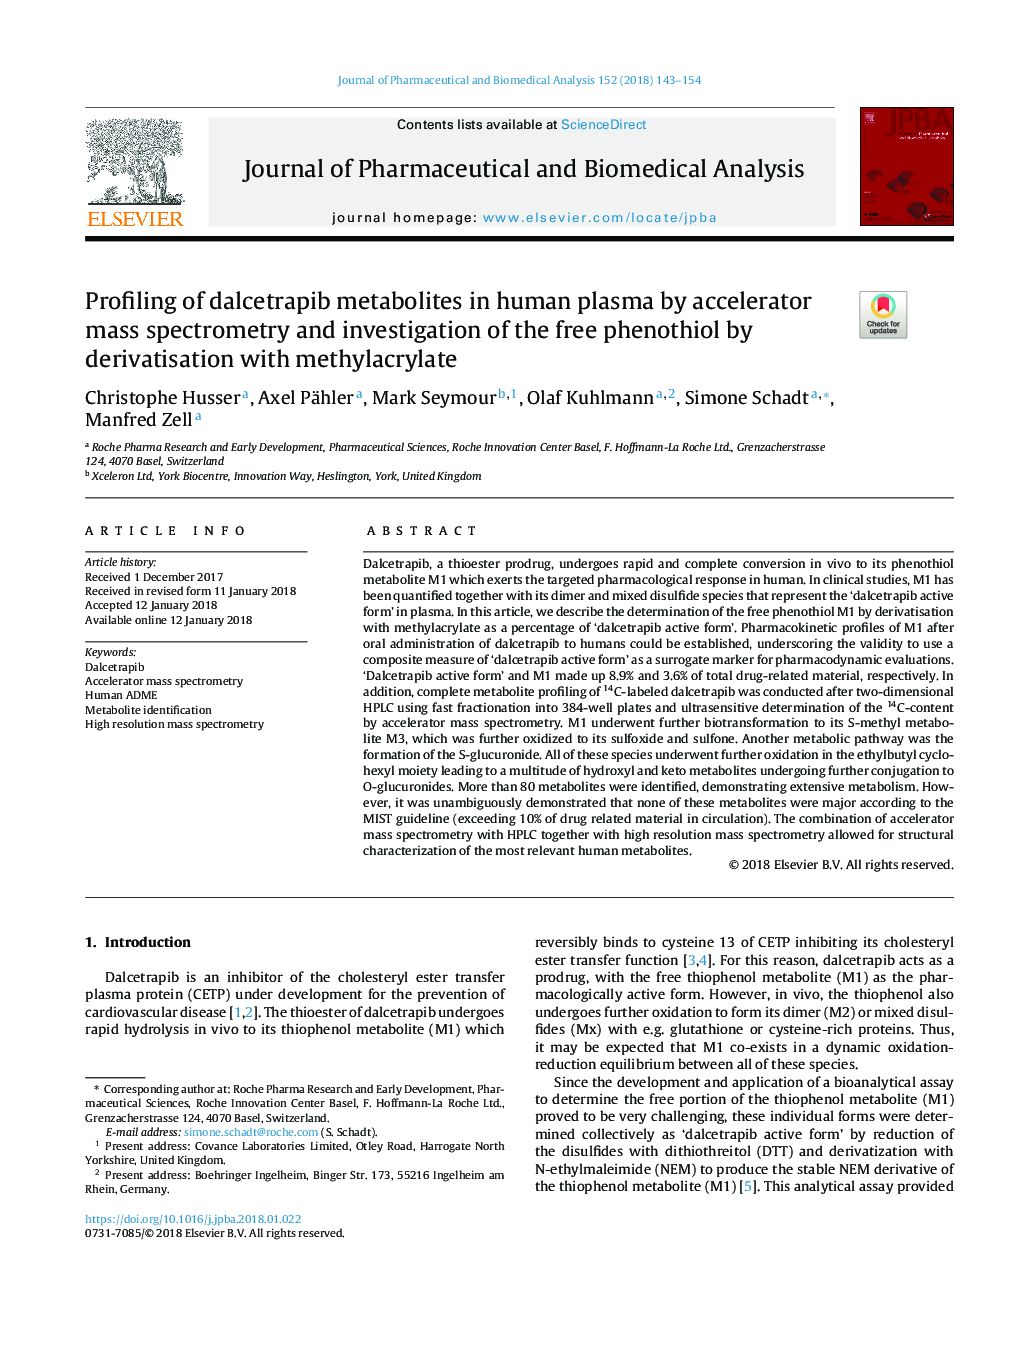 پروفیل کردن متابولیت های داسیتاپیب در پلاسمای انسانی با استفاده از اسپکترومتری جرمی شتاب دهنده و بررسی فنوتیول آزاد با ترکیب با متیل اکریلات 